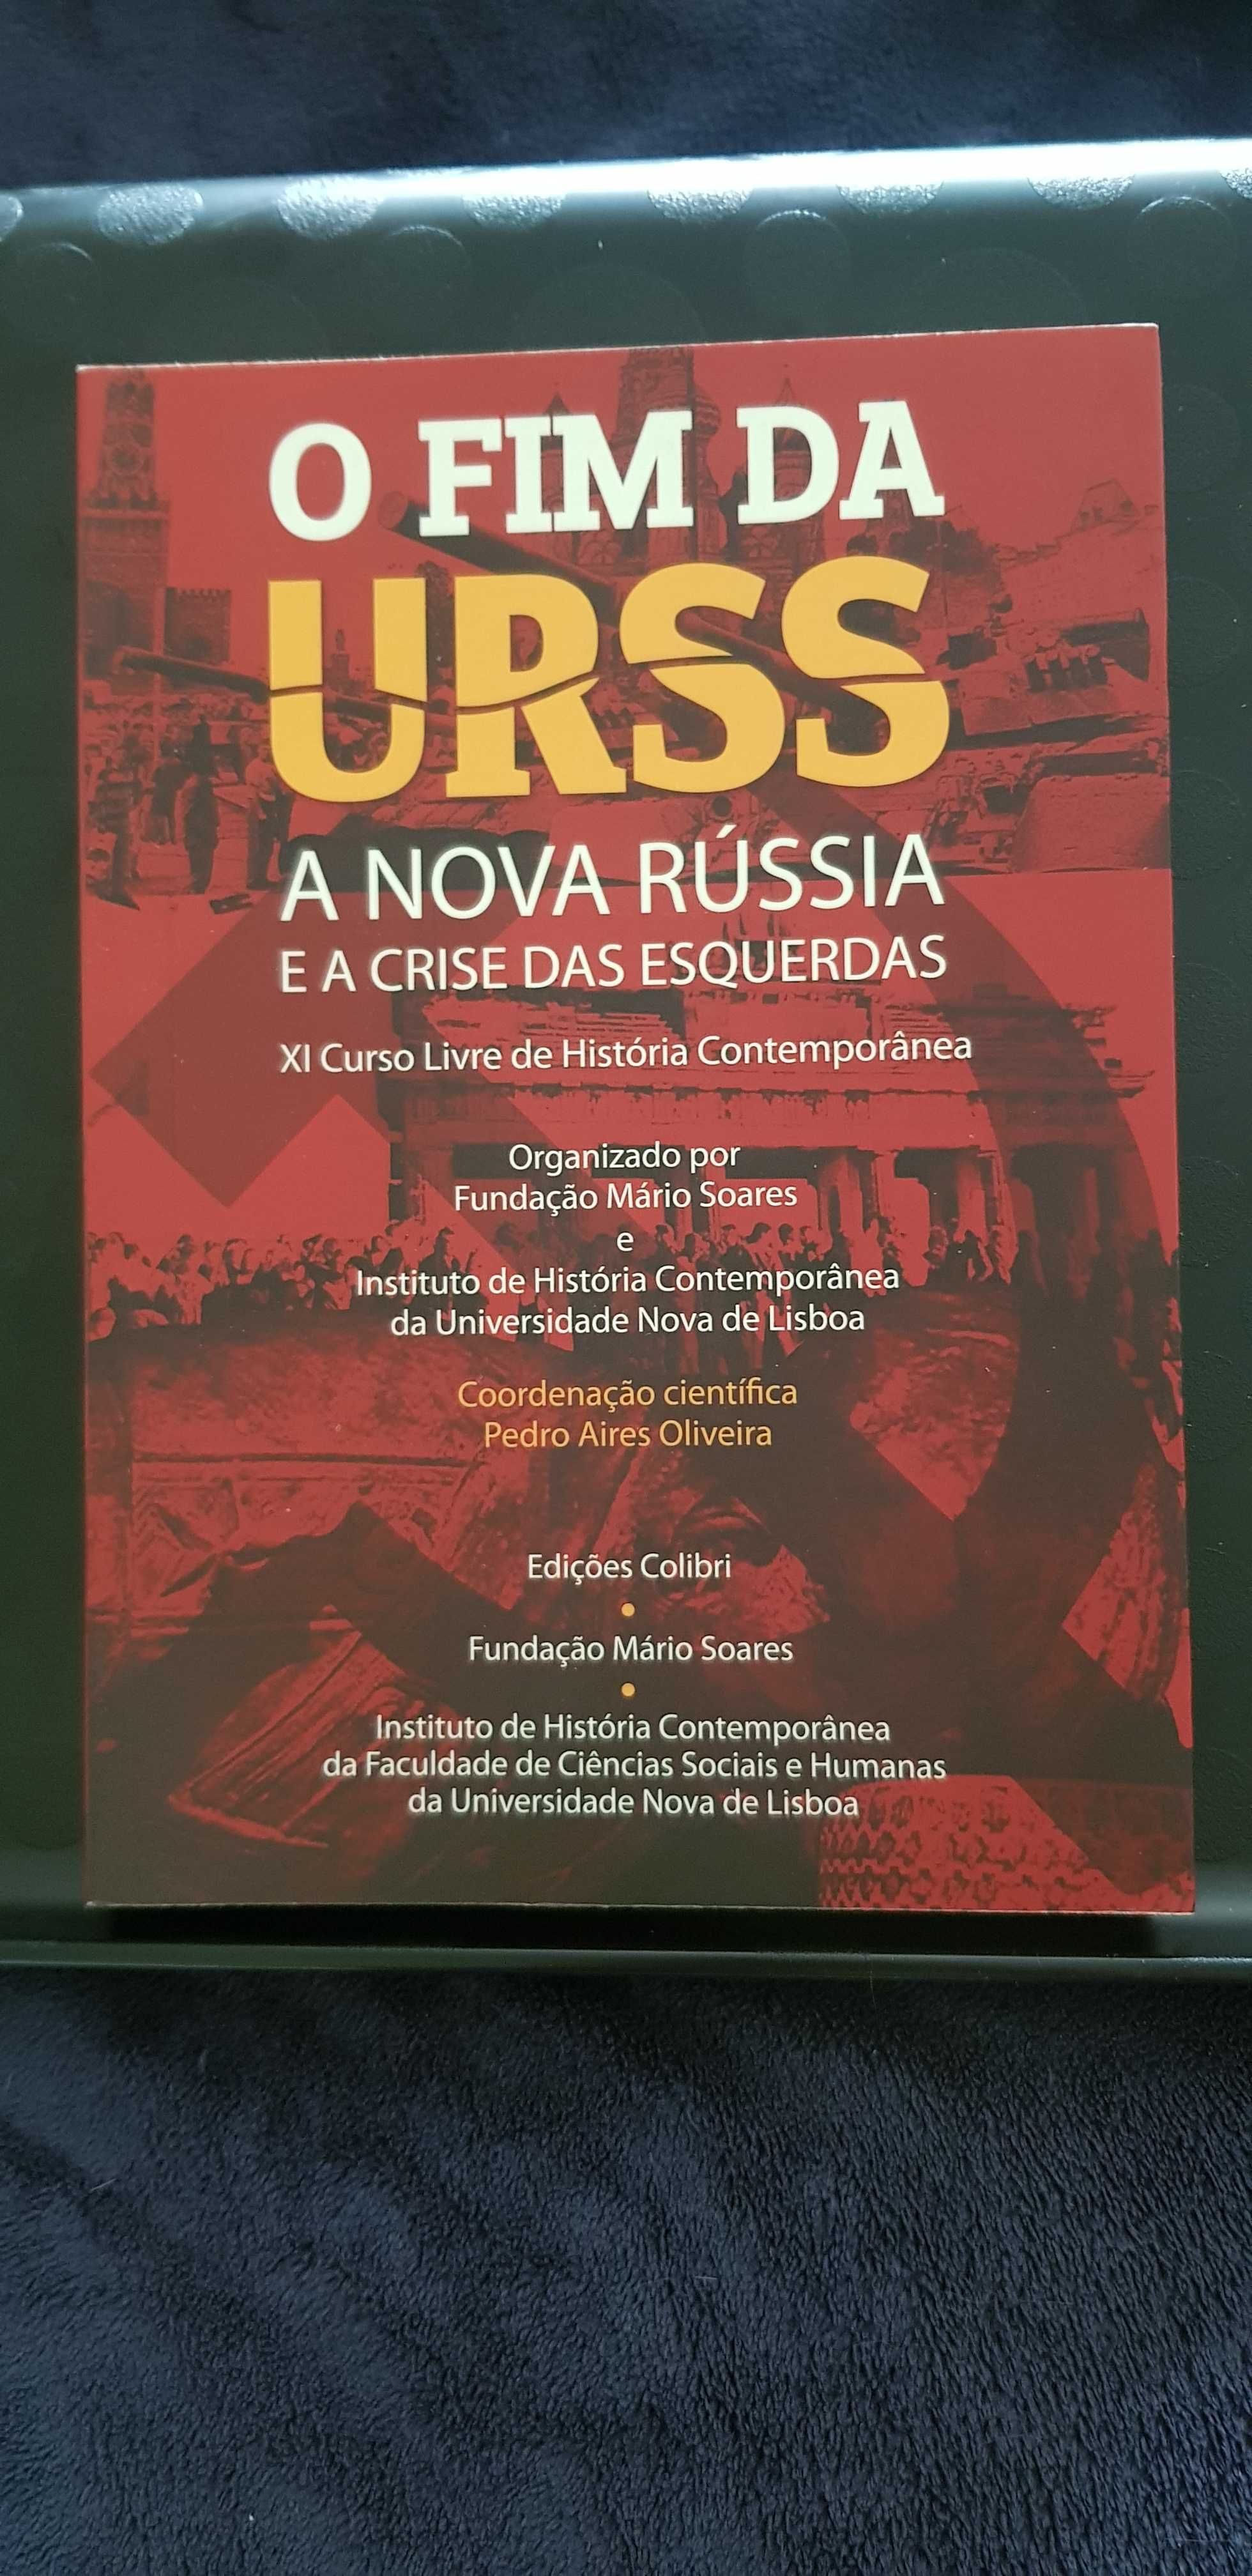 O fim da URSS a nova Rússia e a crise das esquerdas